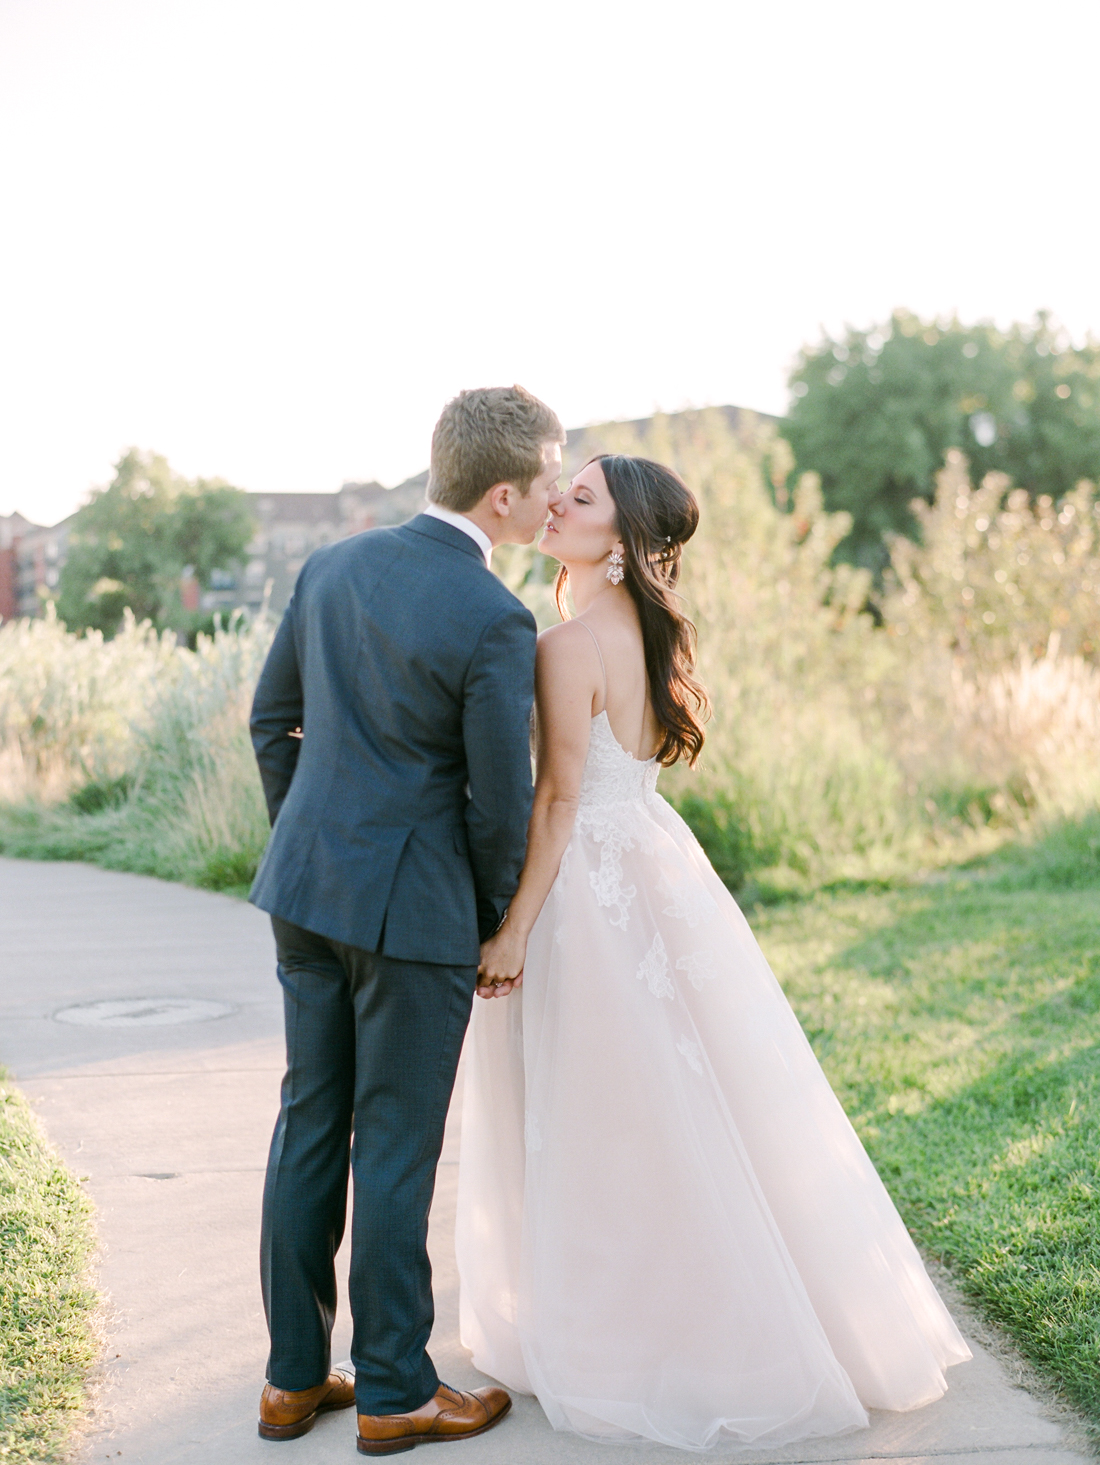 Kristin_Brett_TheKitchen_Denver_Wedding_by_Connie_Whitlock_web_295.jpg